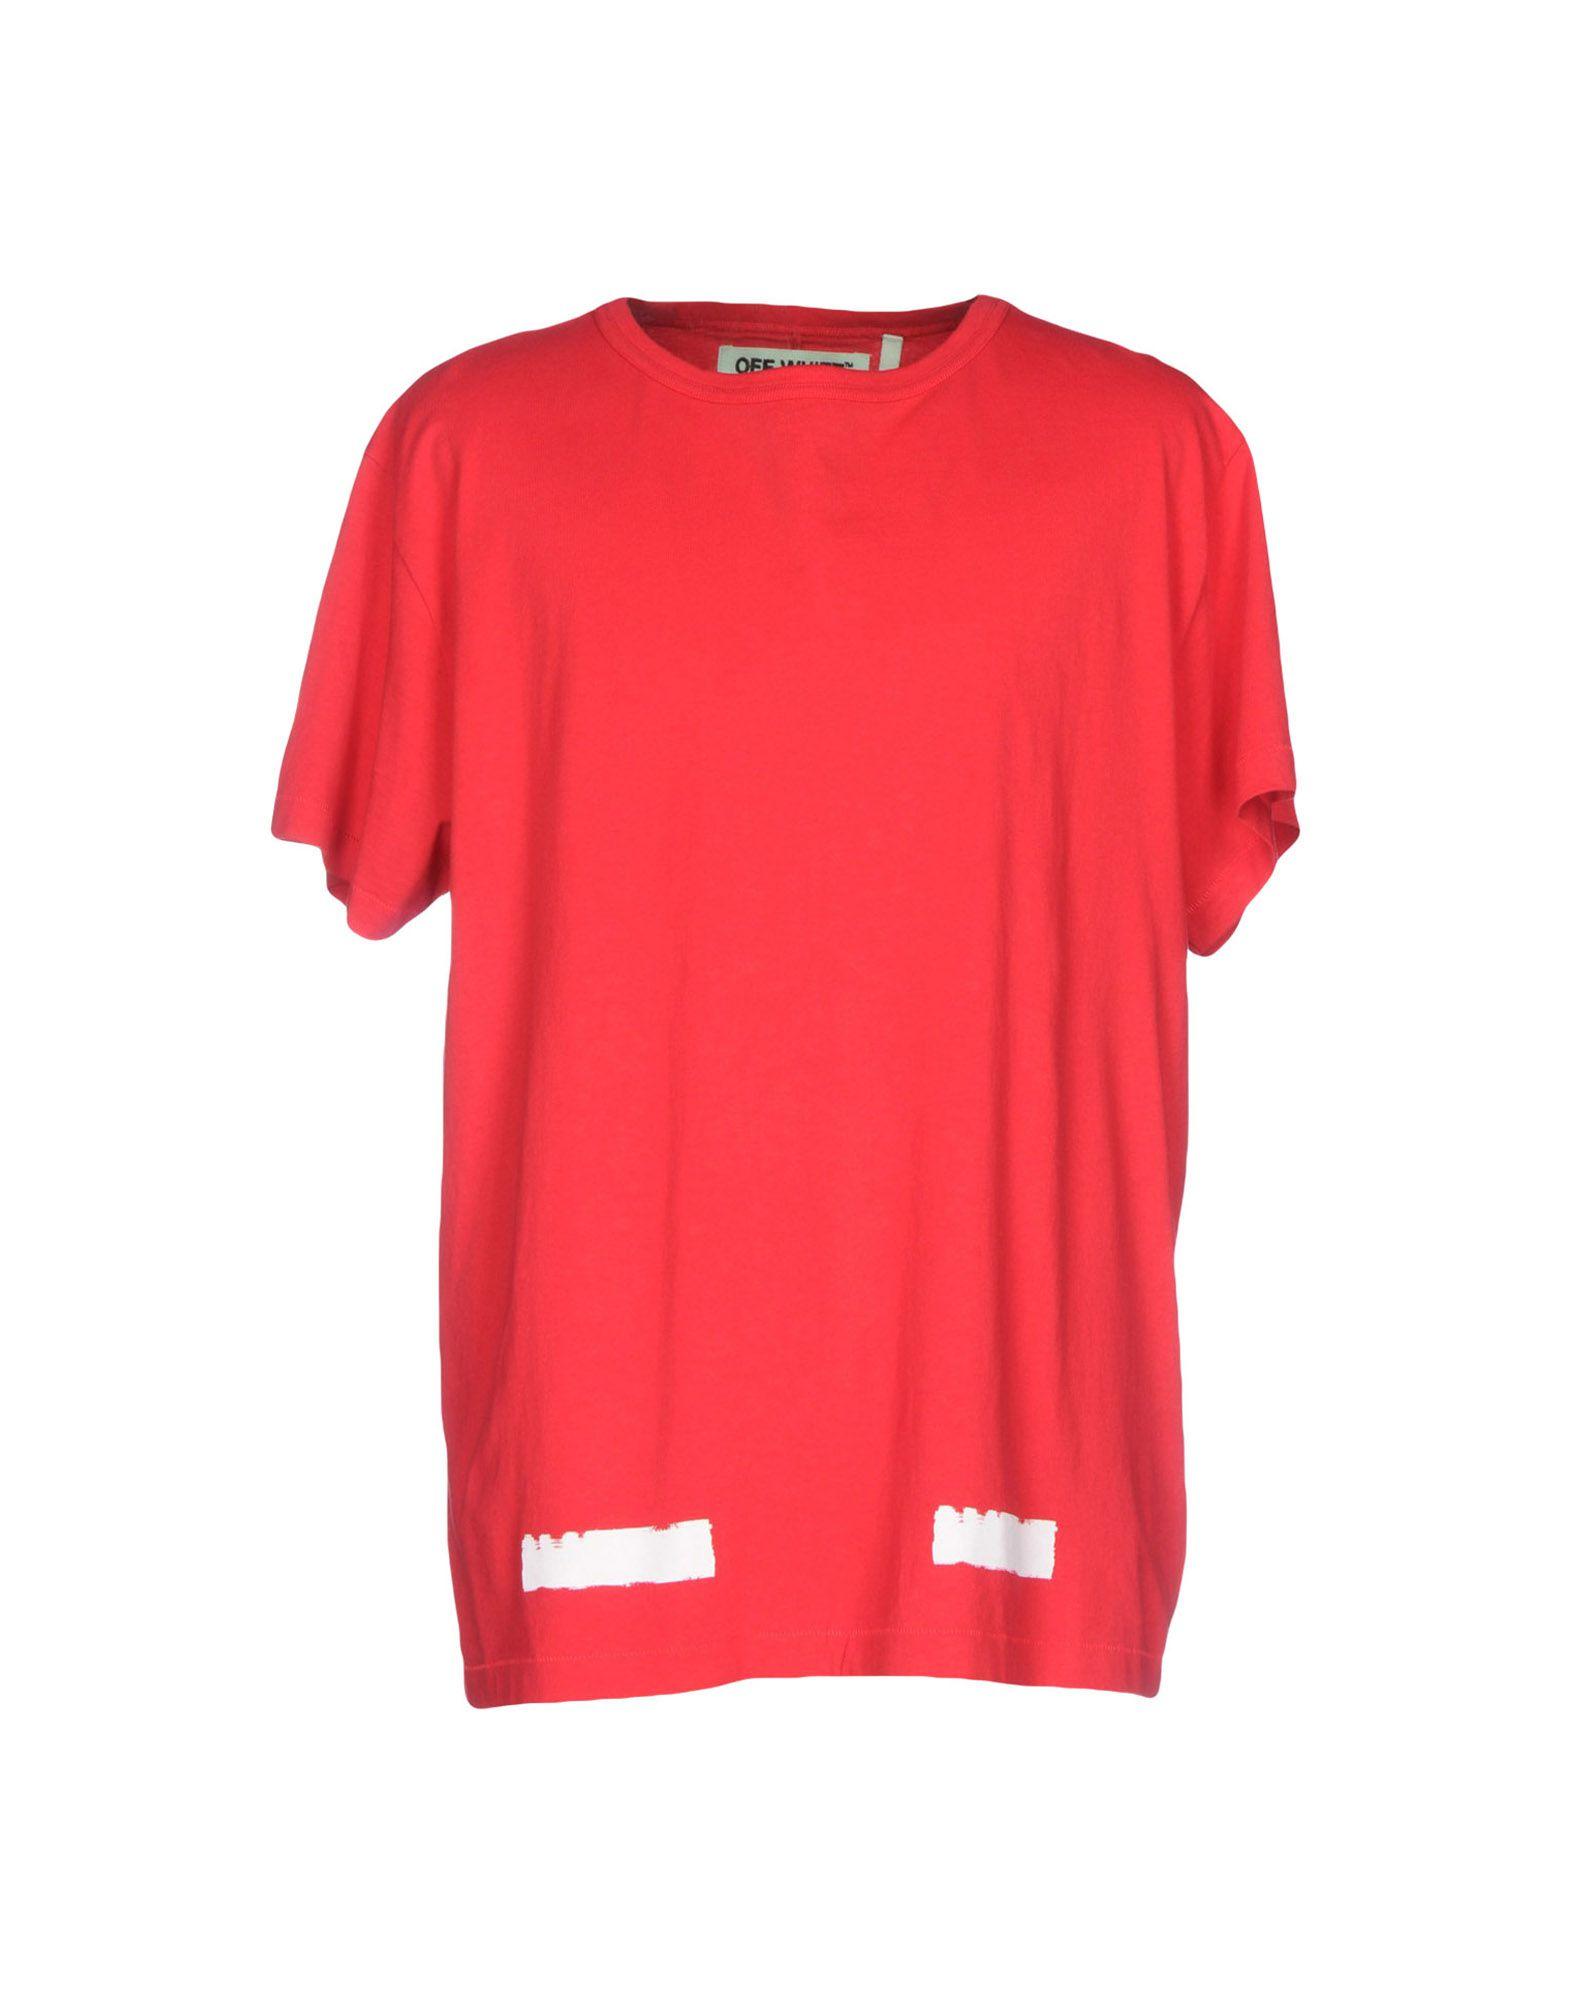 Lyst - Off-White c/o Virgil Abloh T-shirt in Red for Men